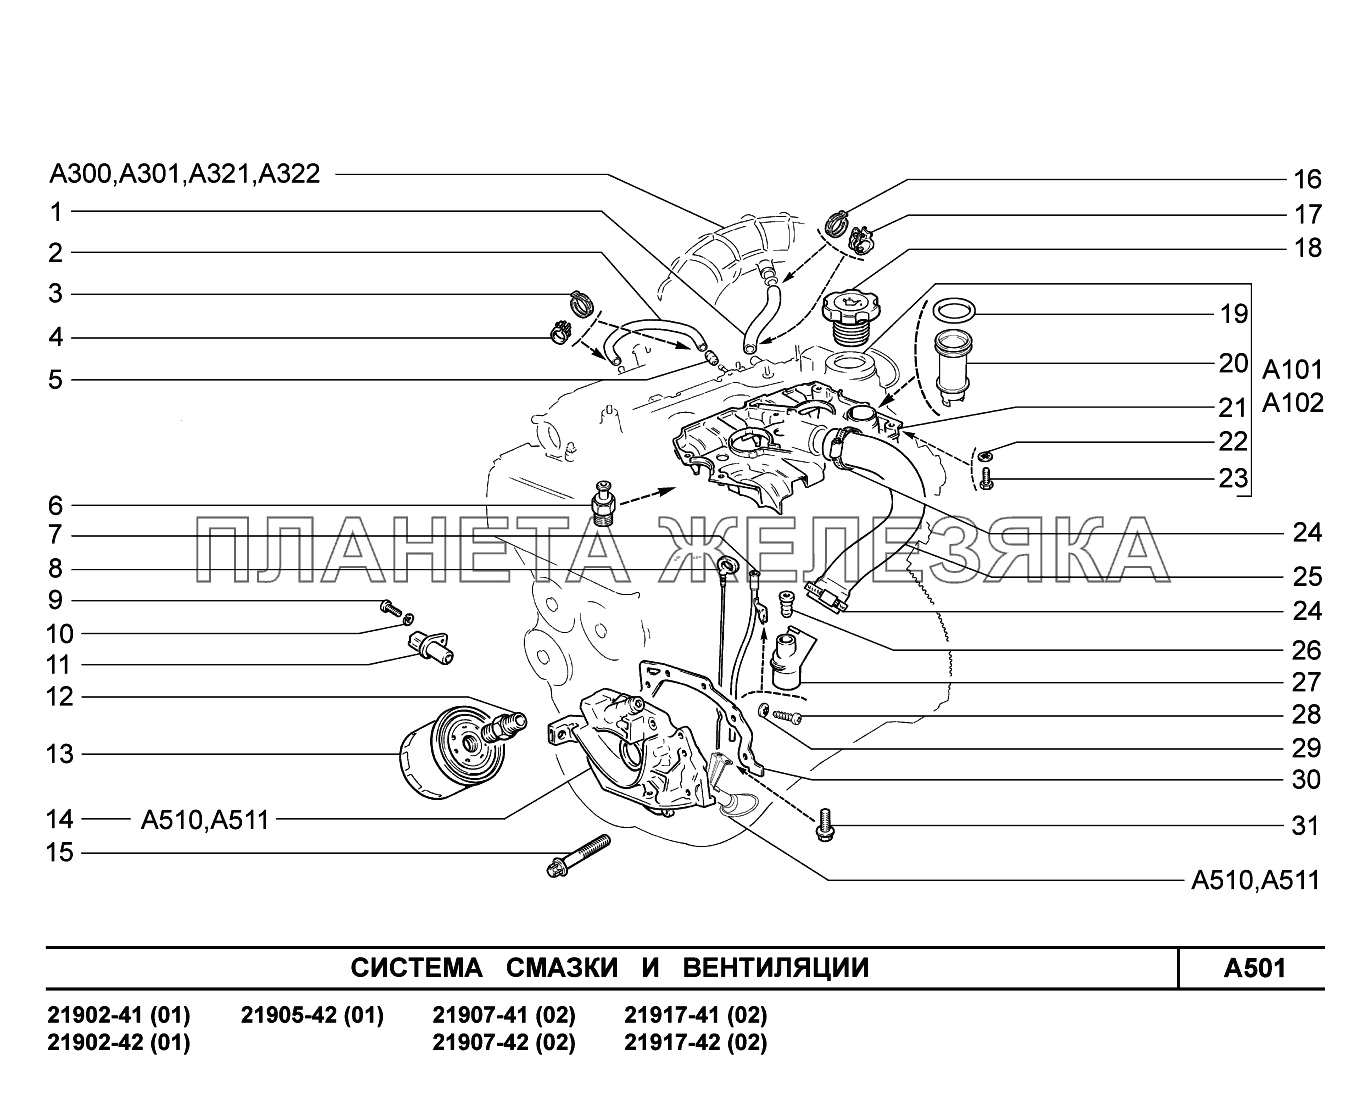 A501. Система смазки и вентиляции Lada Granta-2190